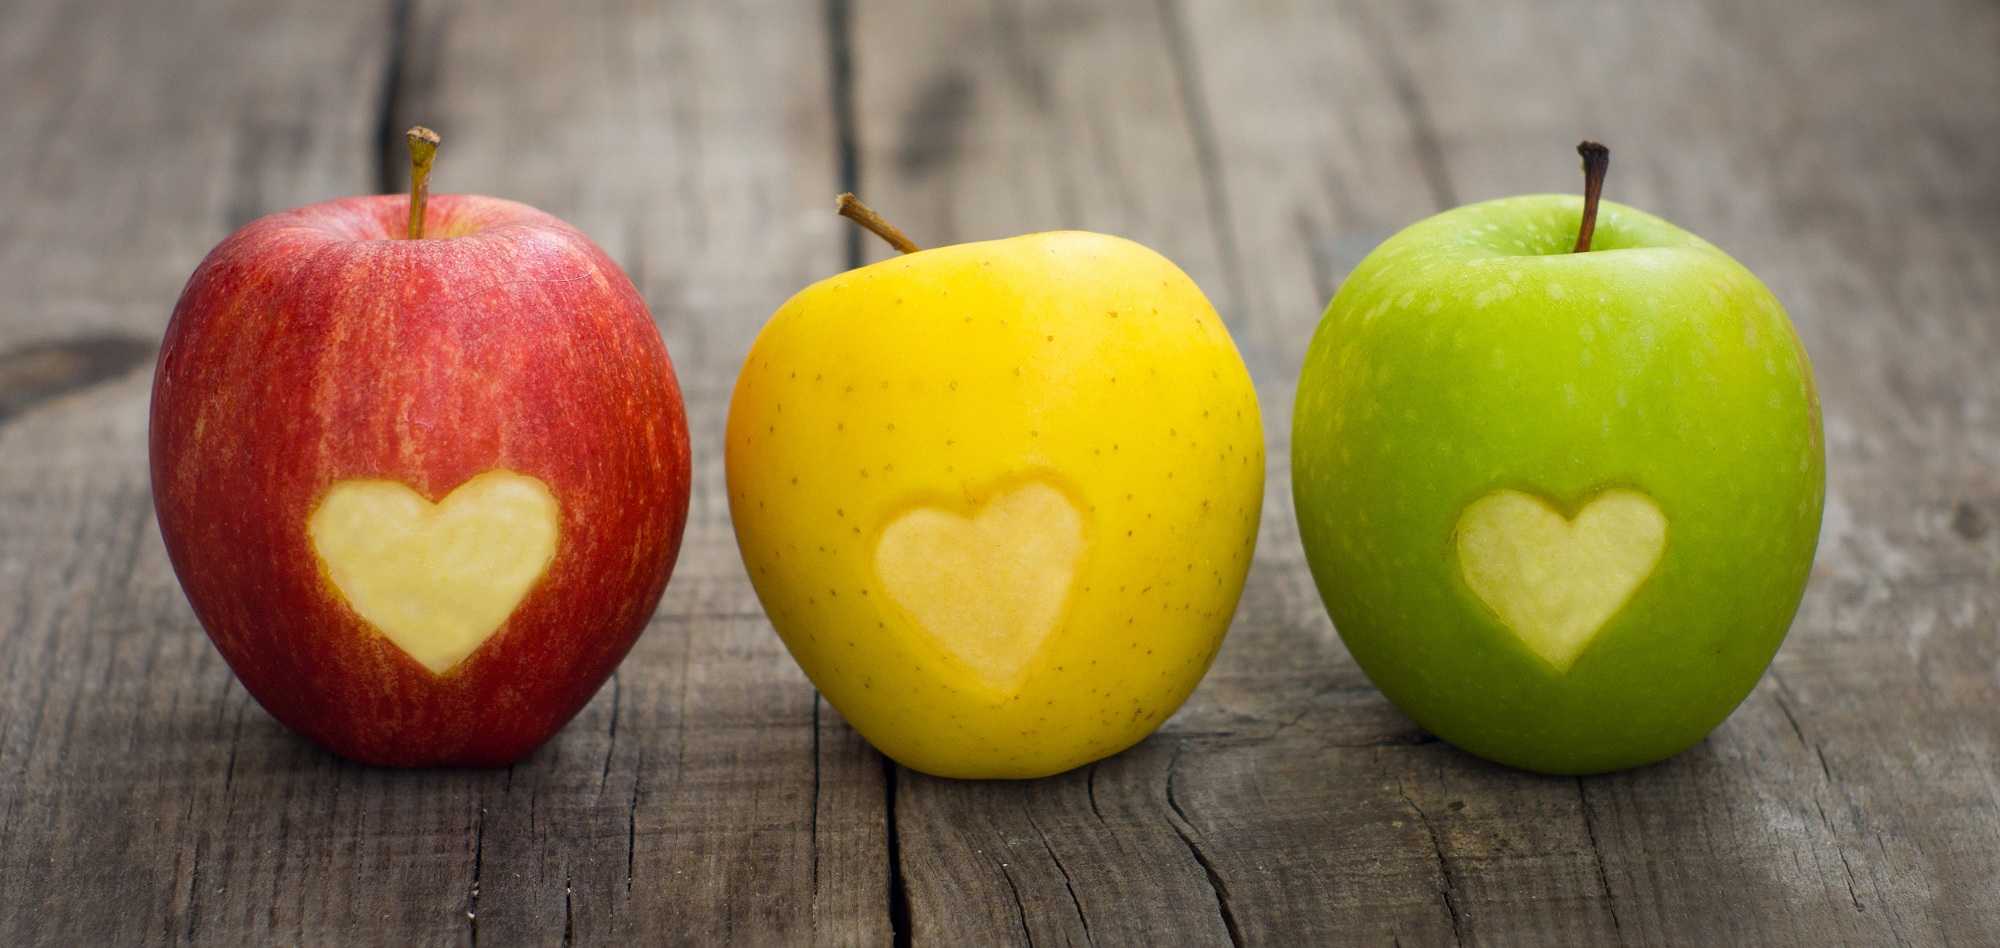 История за двете ябълки, или как ни нараняват думите